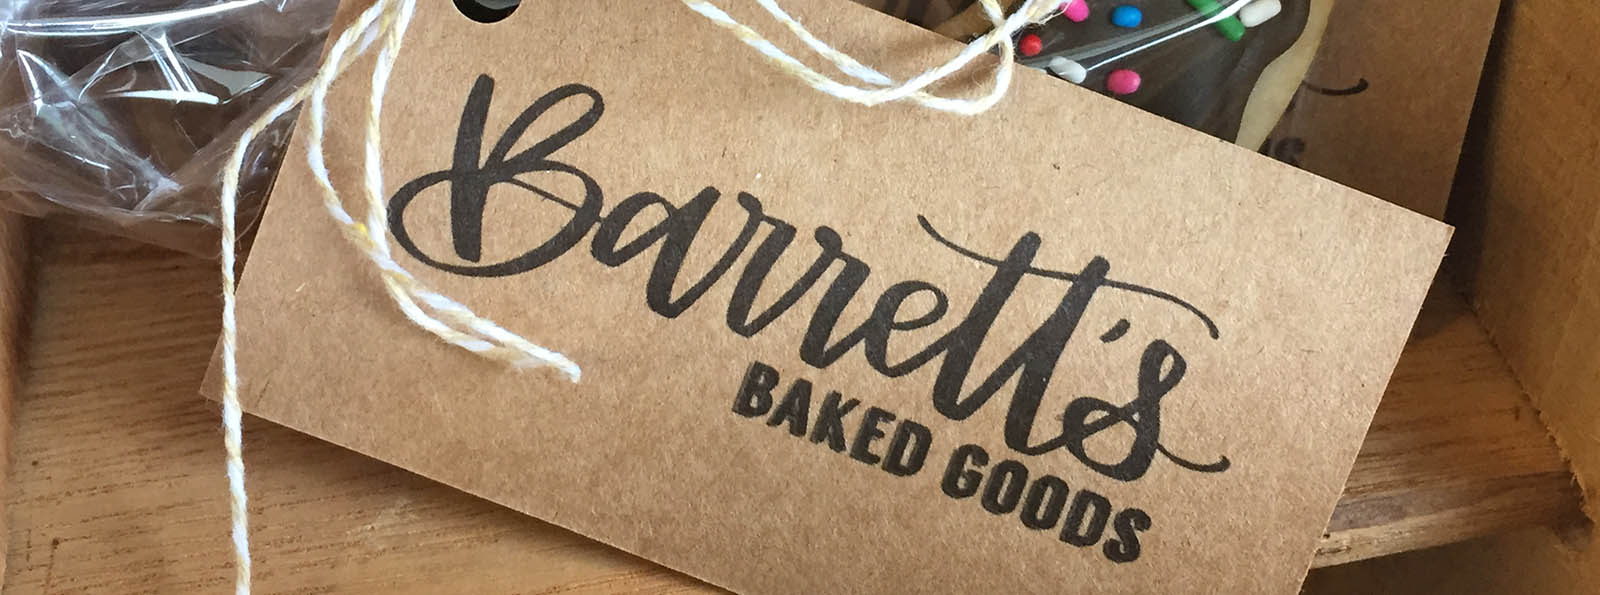 Barrett's Baked Goods, Buford GA